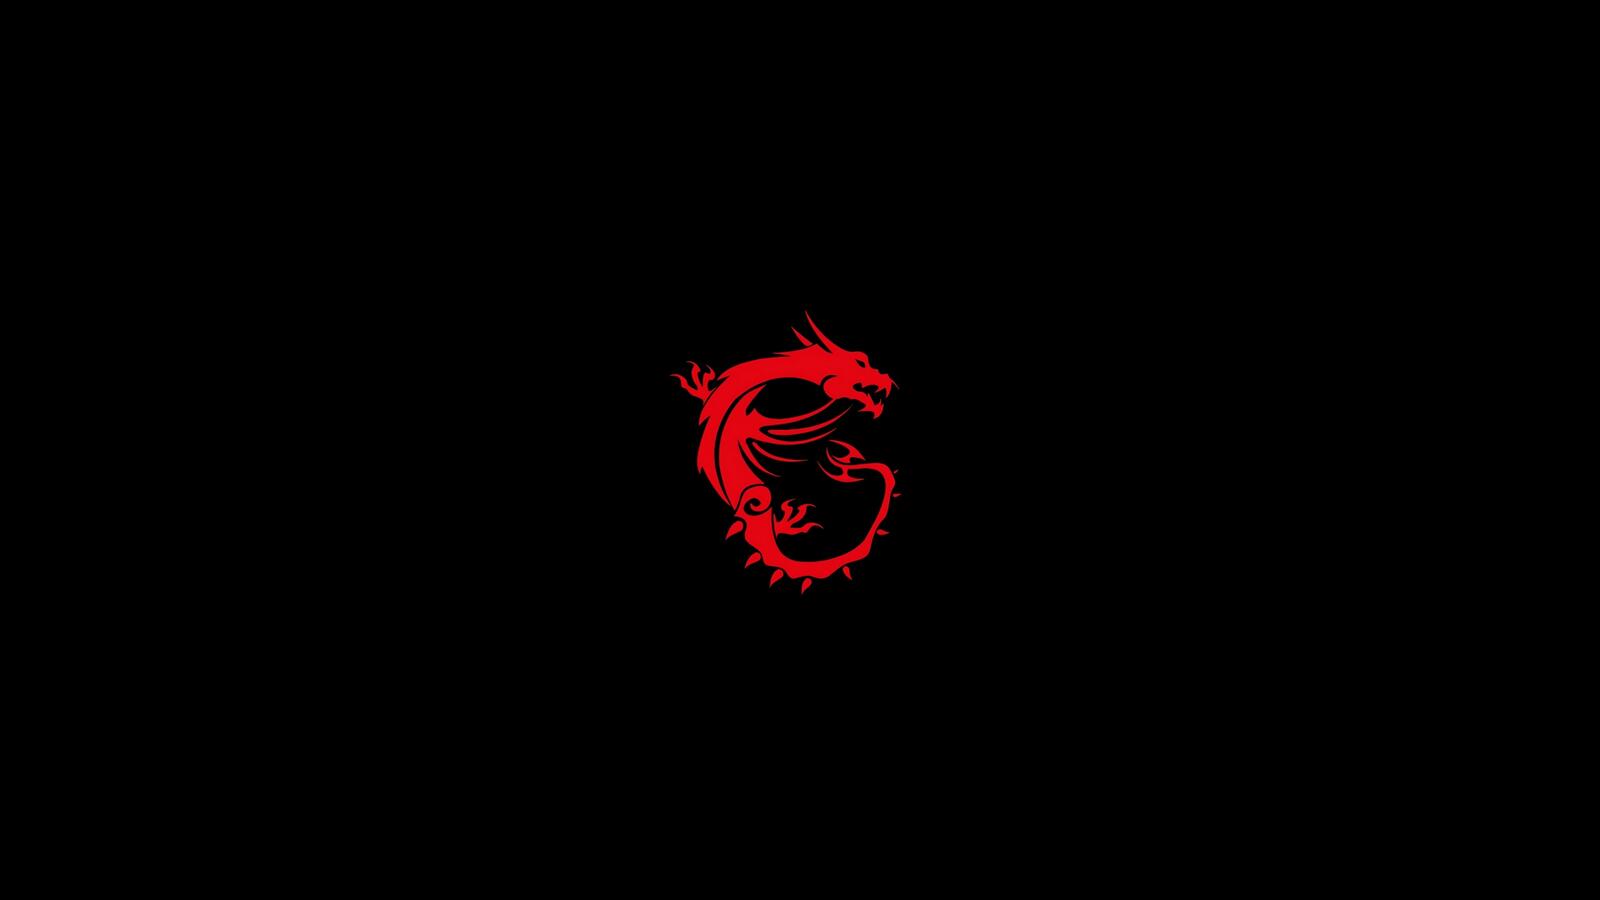 Бесплатное фото Логотип MSI дракона на черном фоне